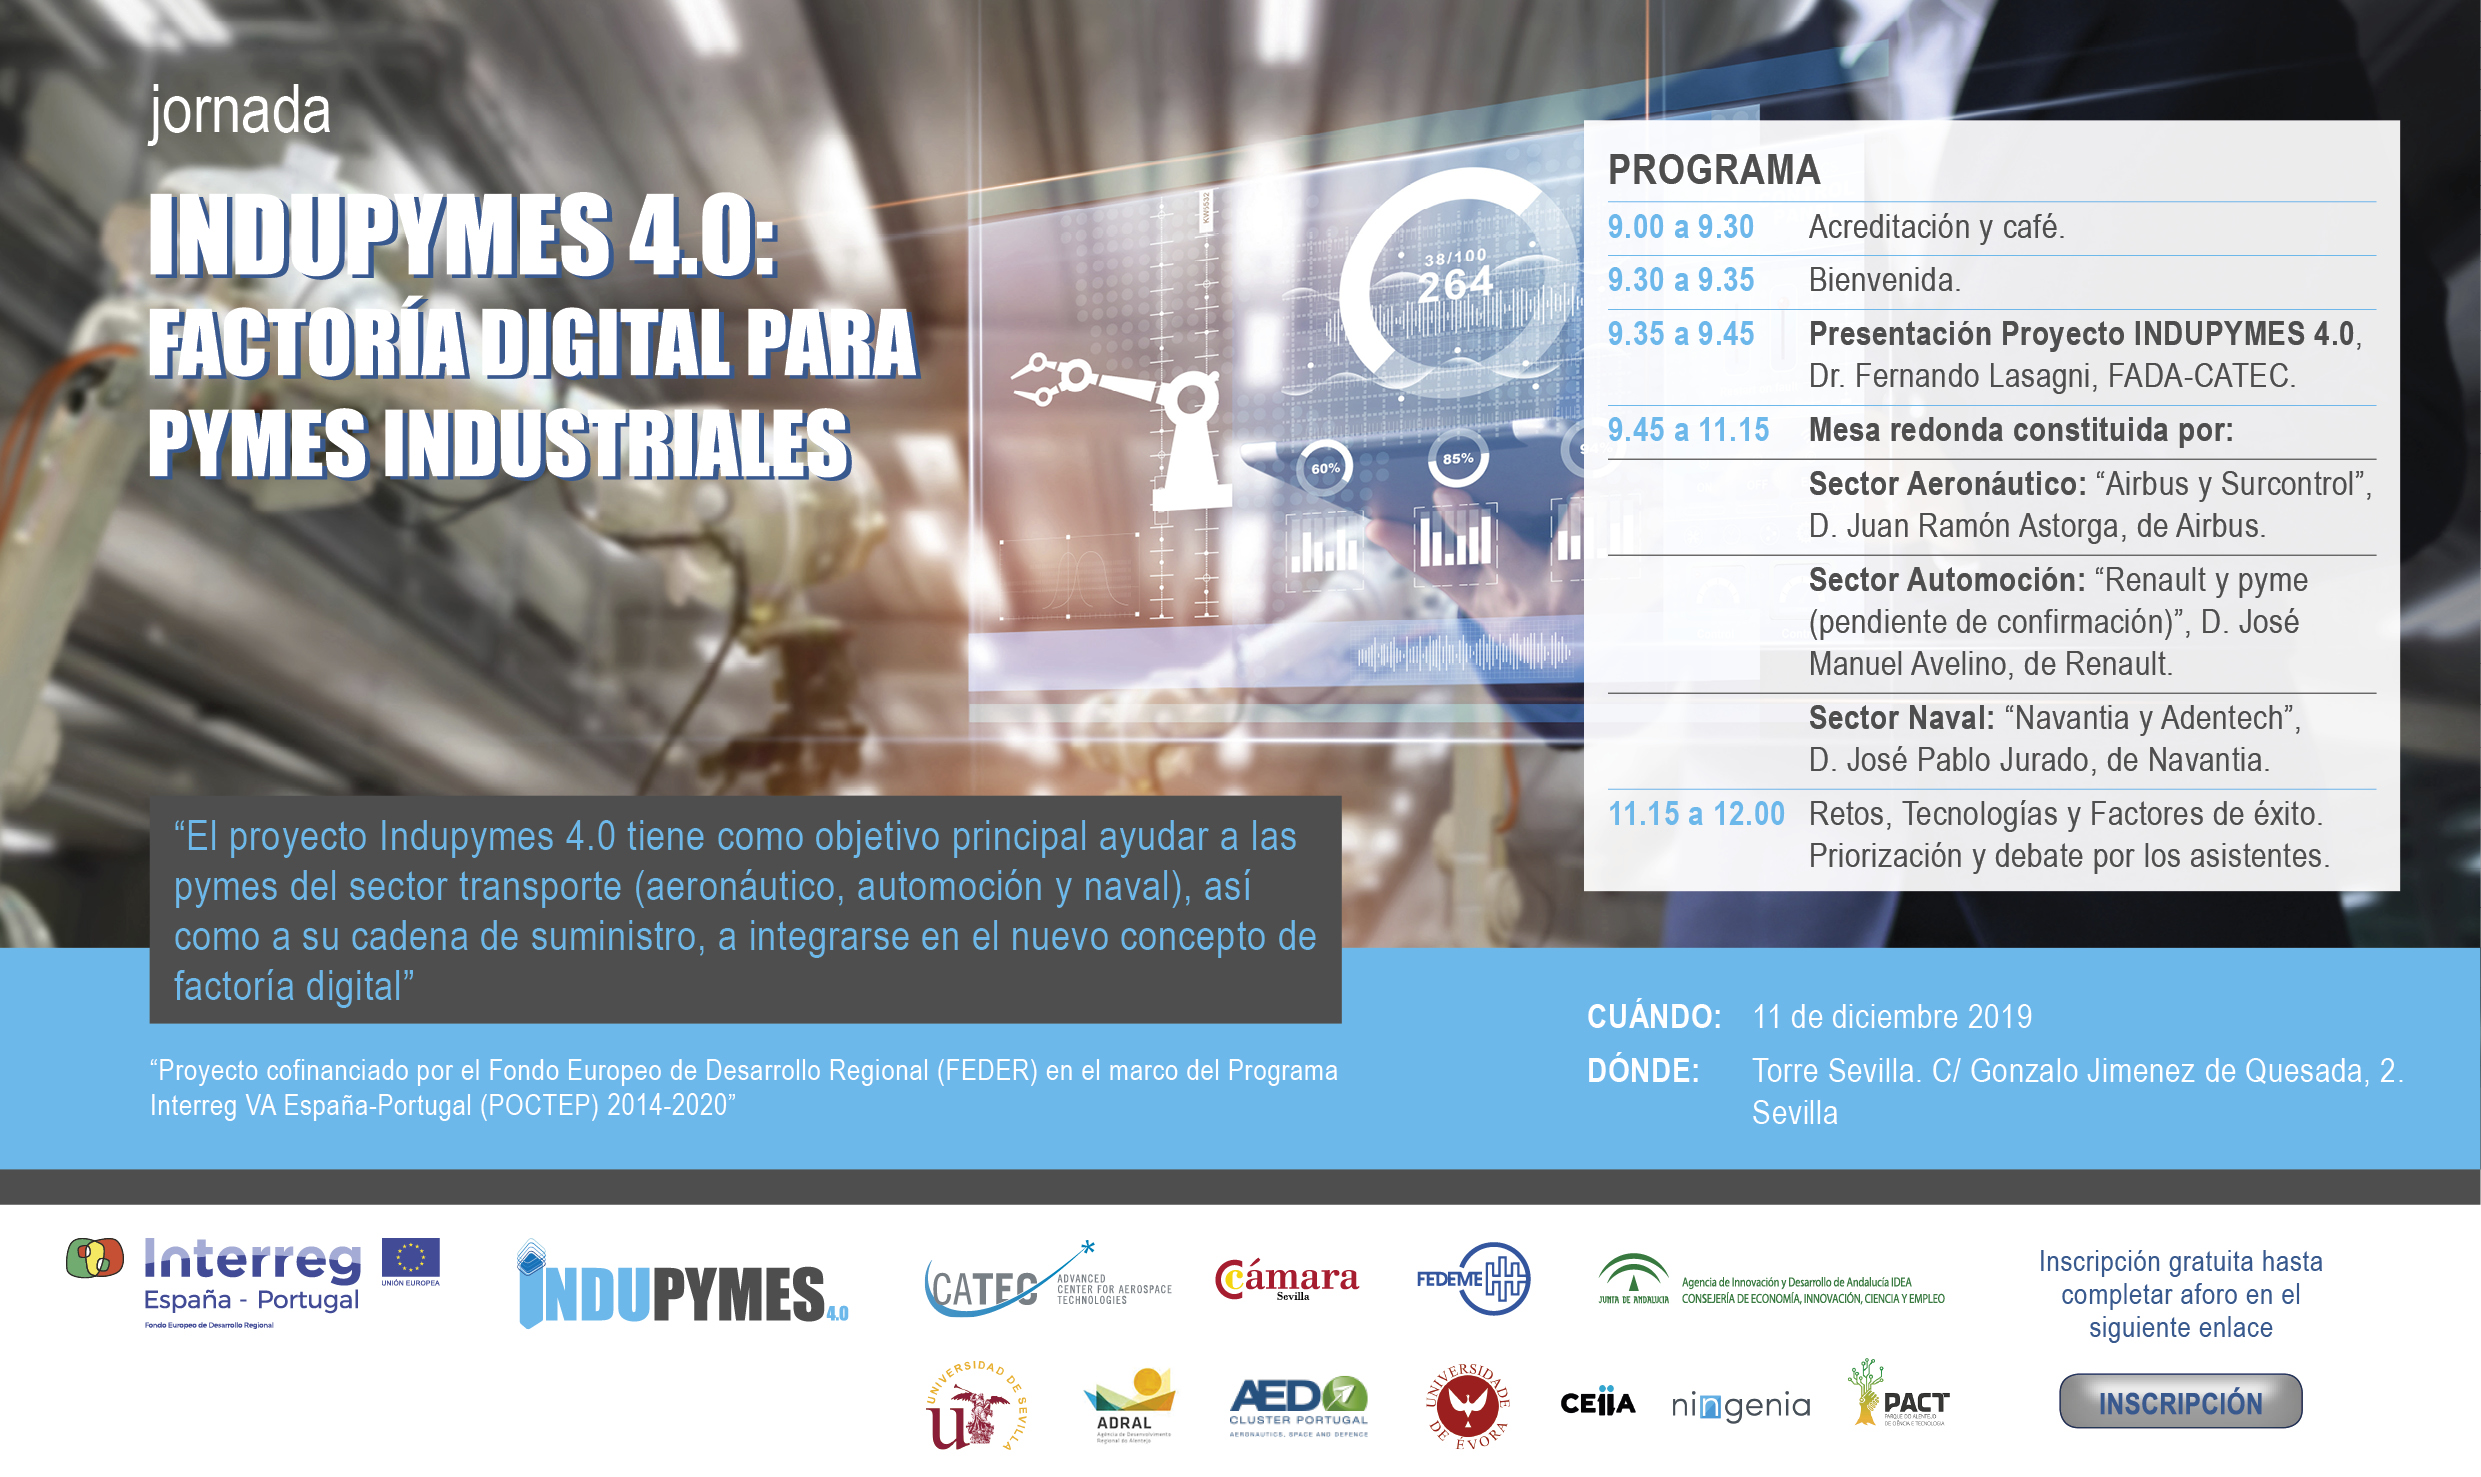 Jornada INDUPYMES 4.0: Factoría Digital para Pymes Industriales. Sevilla, 11 de diciembre